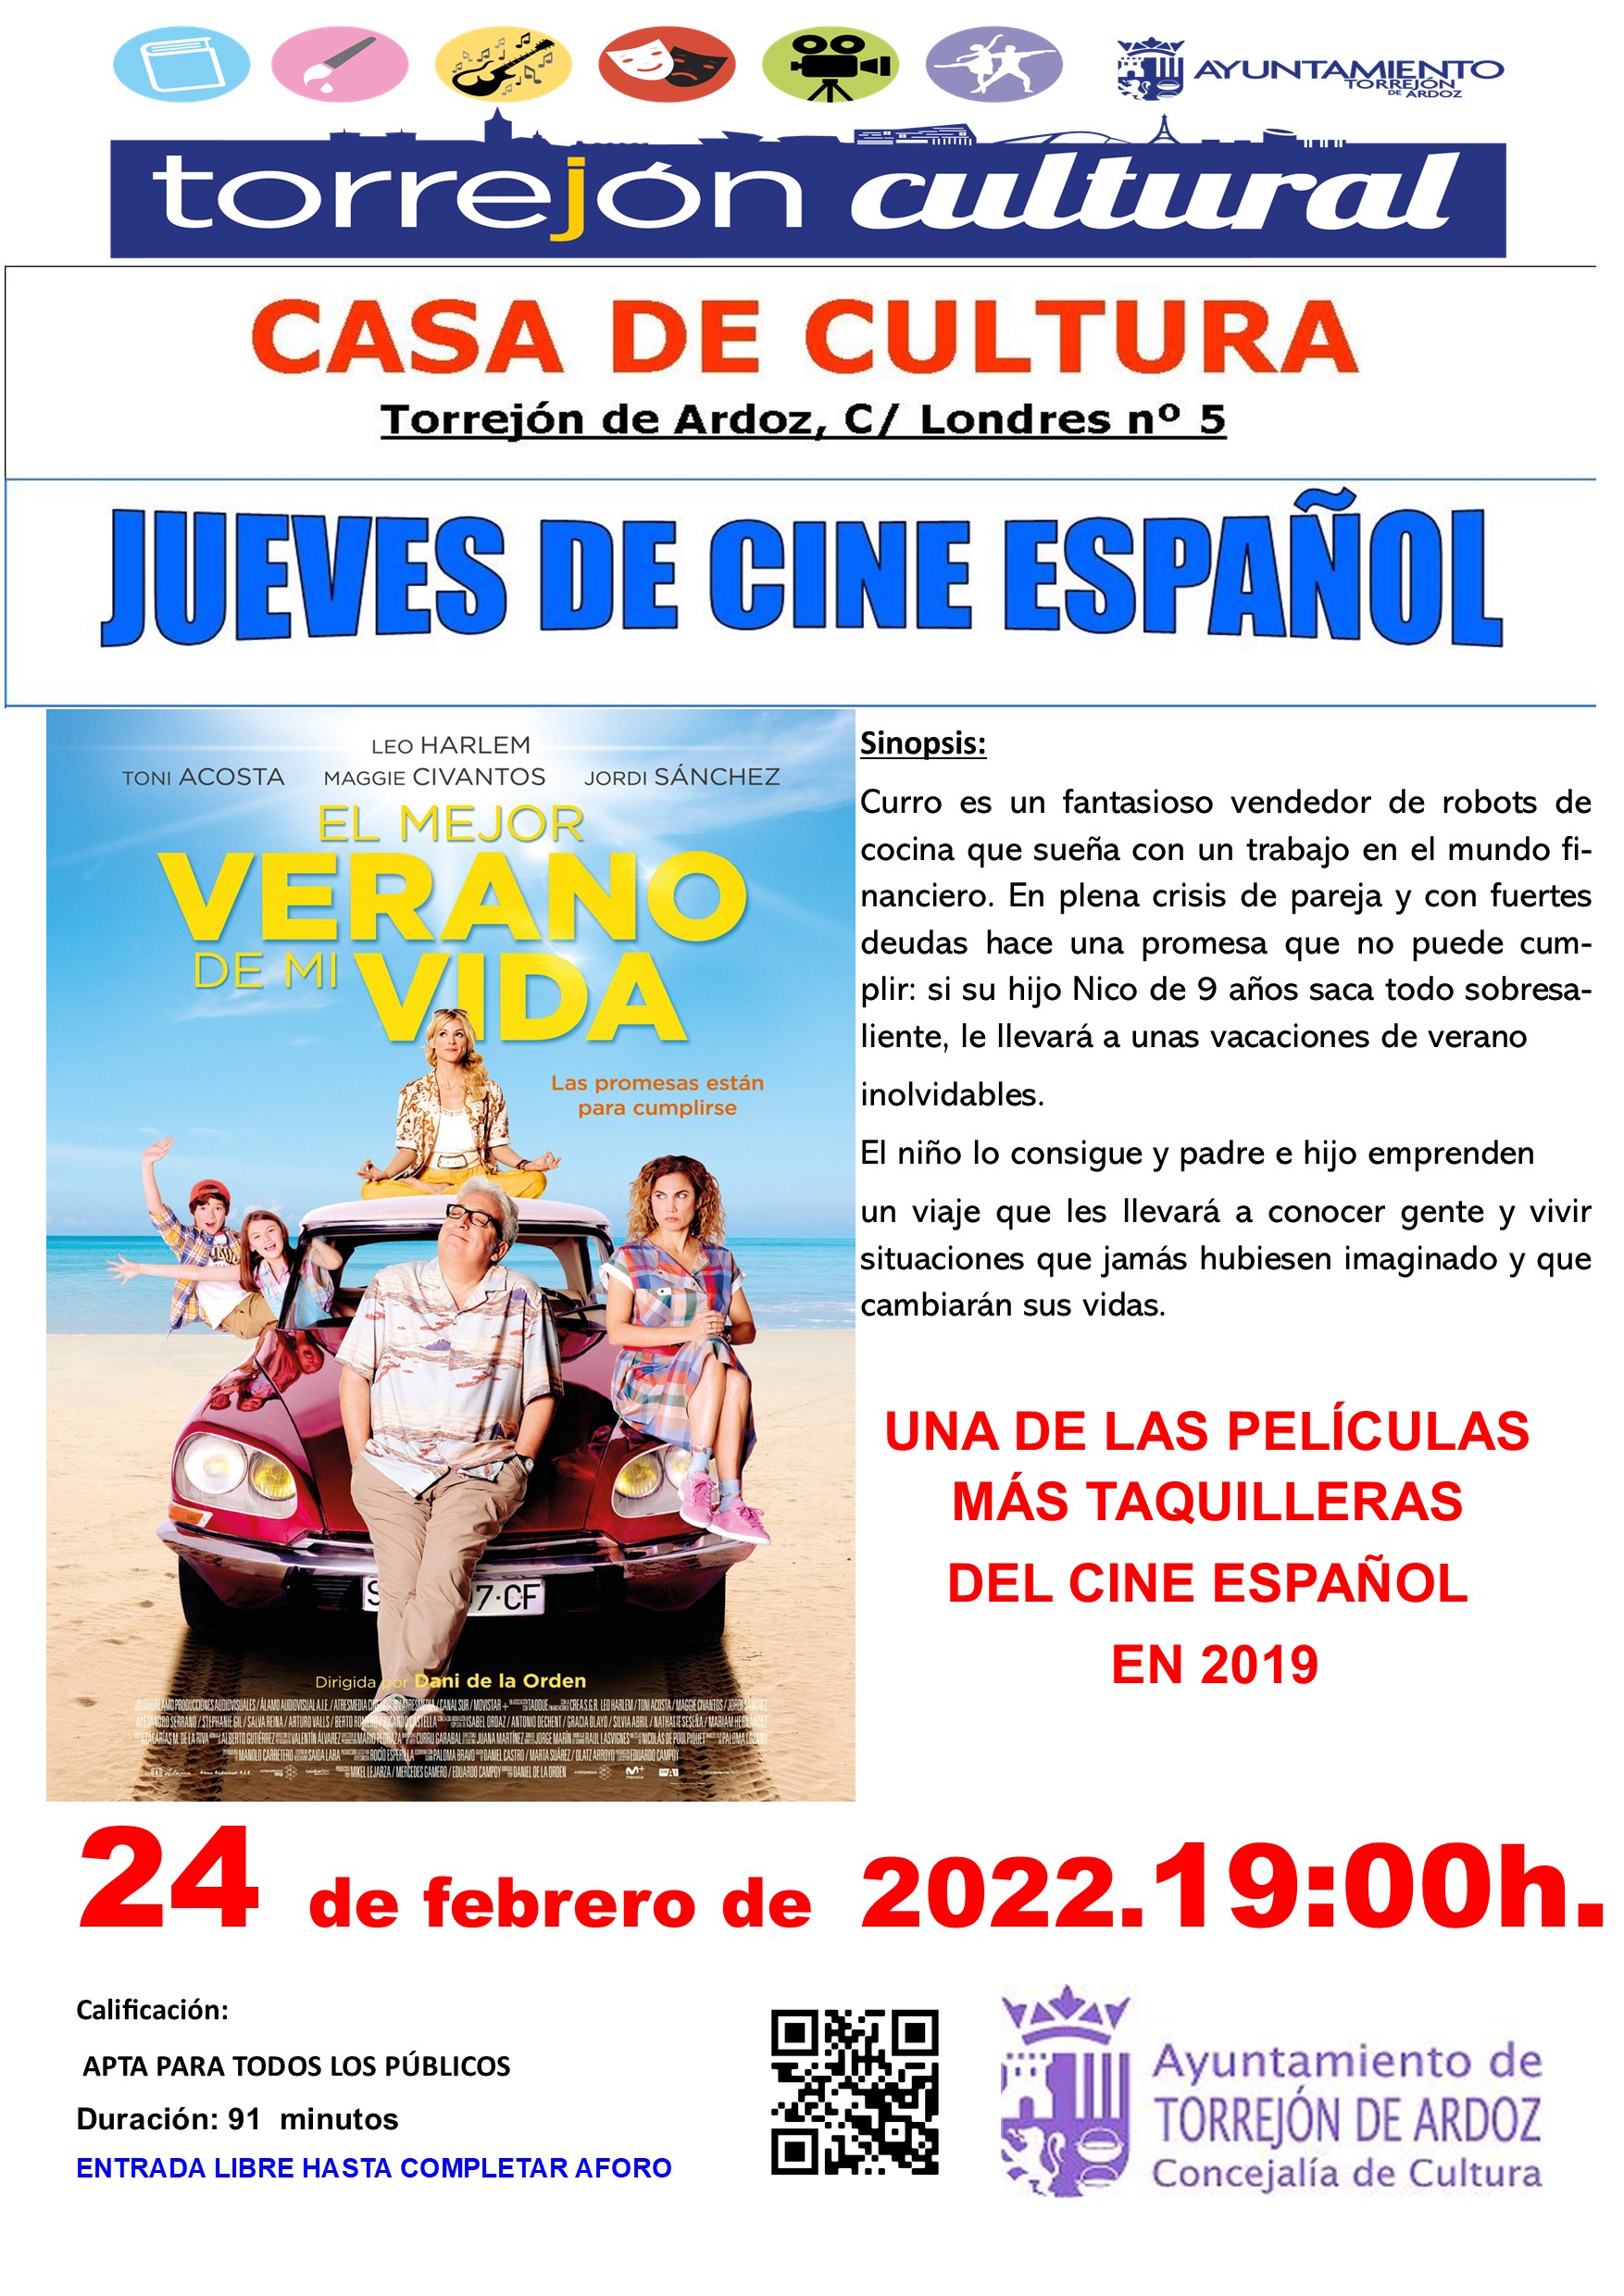 Jueves de Cine Español: El mejo verano de mi vida